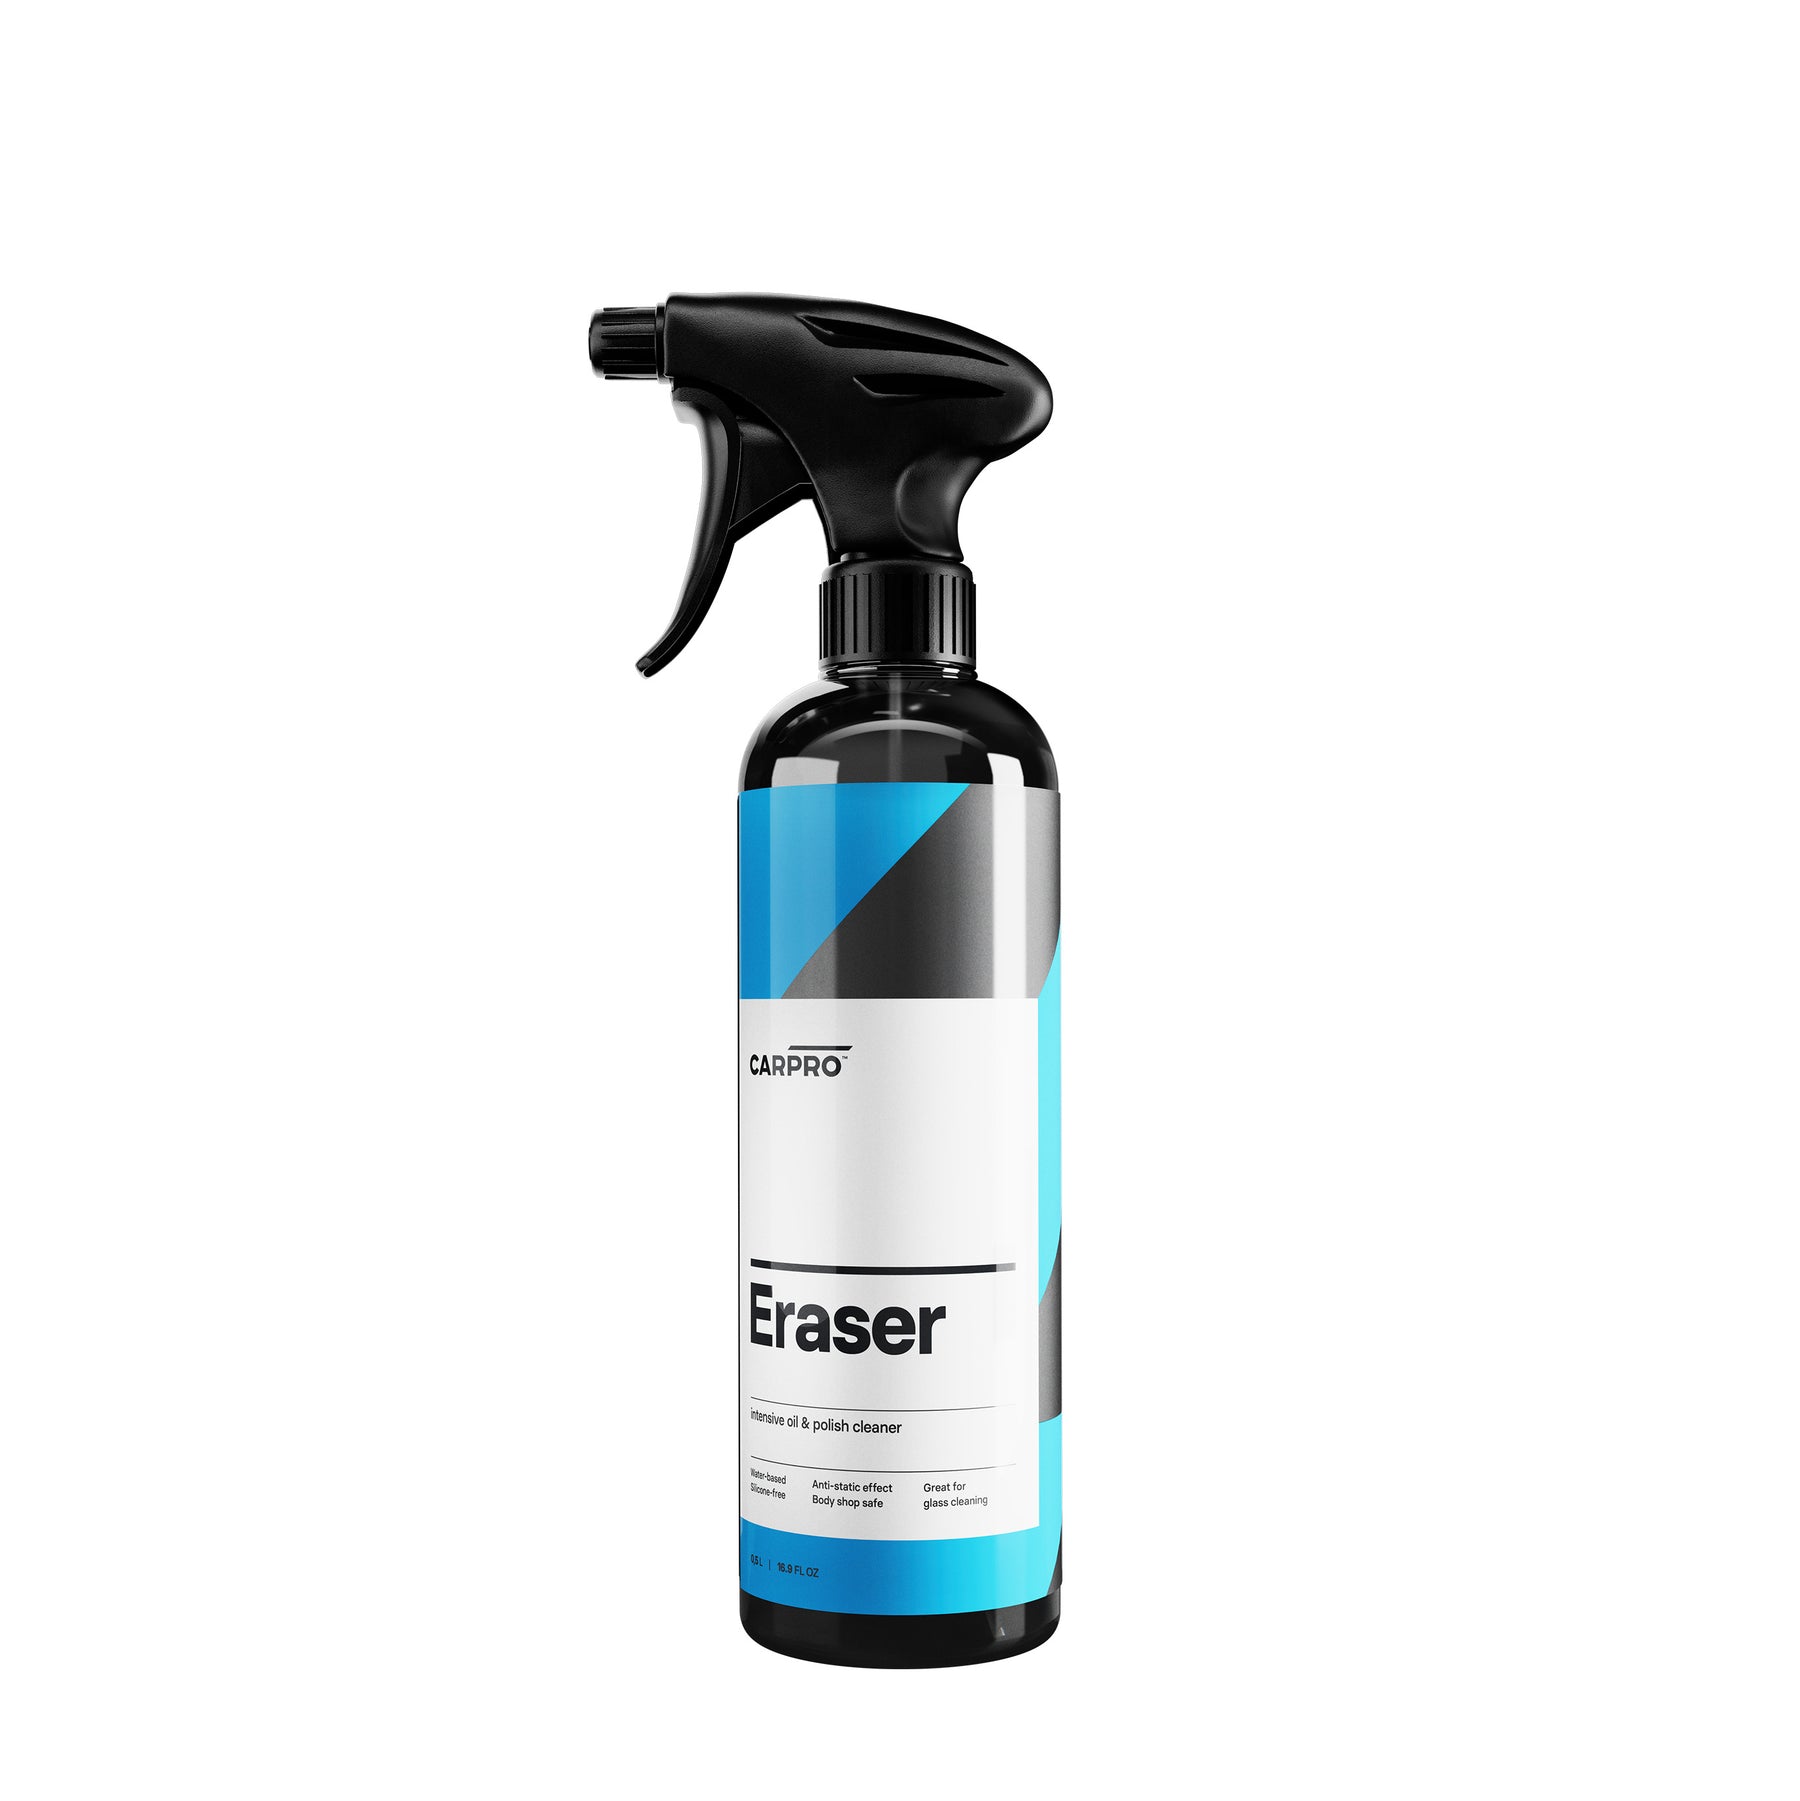 Flacone di CARPRO Eraser su sfondo bianco, detergente a base di alcool per rimuovere residui di polish e preparare la superficie del veicolo alla protezione.